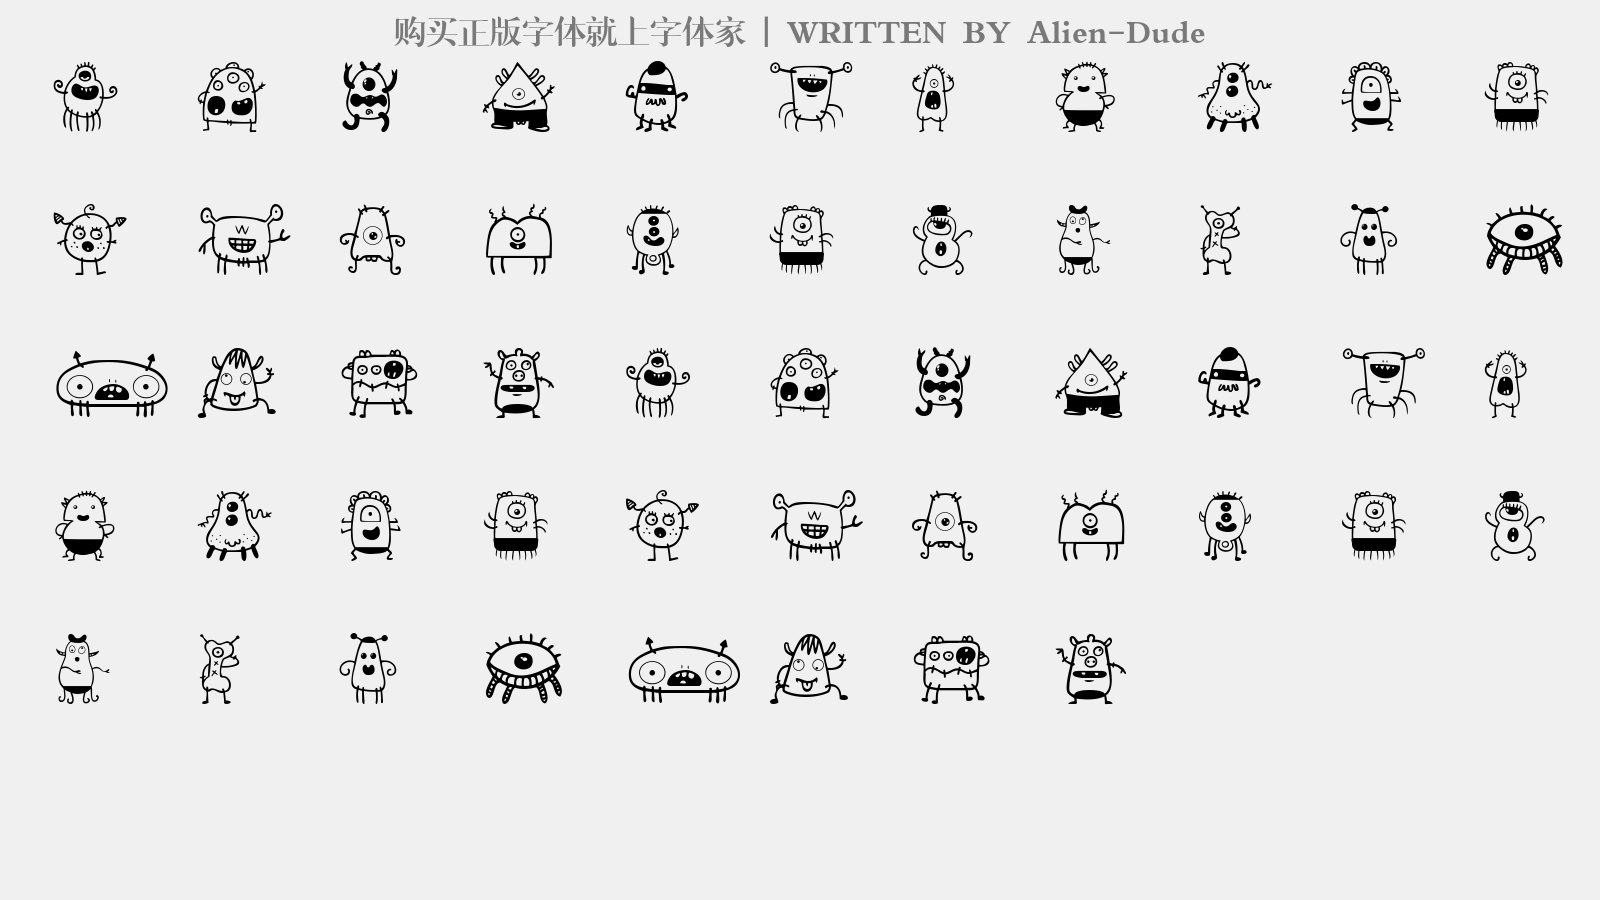 Alien-Dude - 大写字母/小写字母/数字